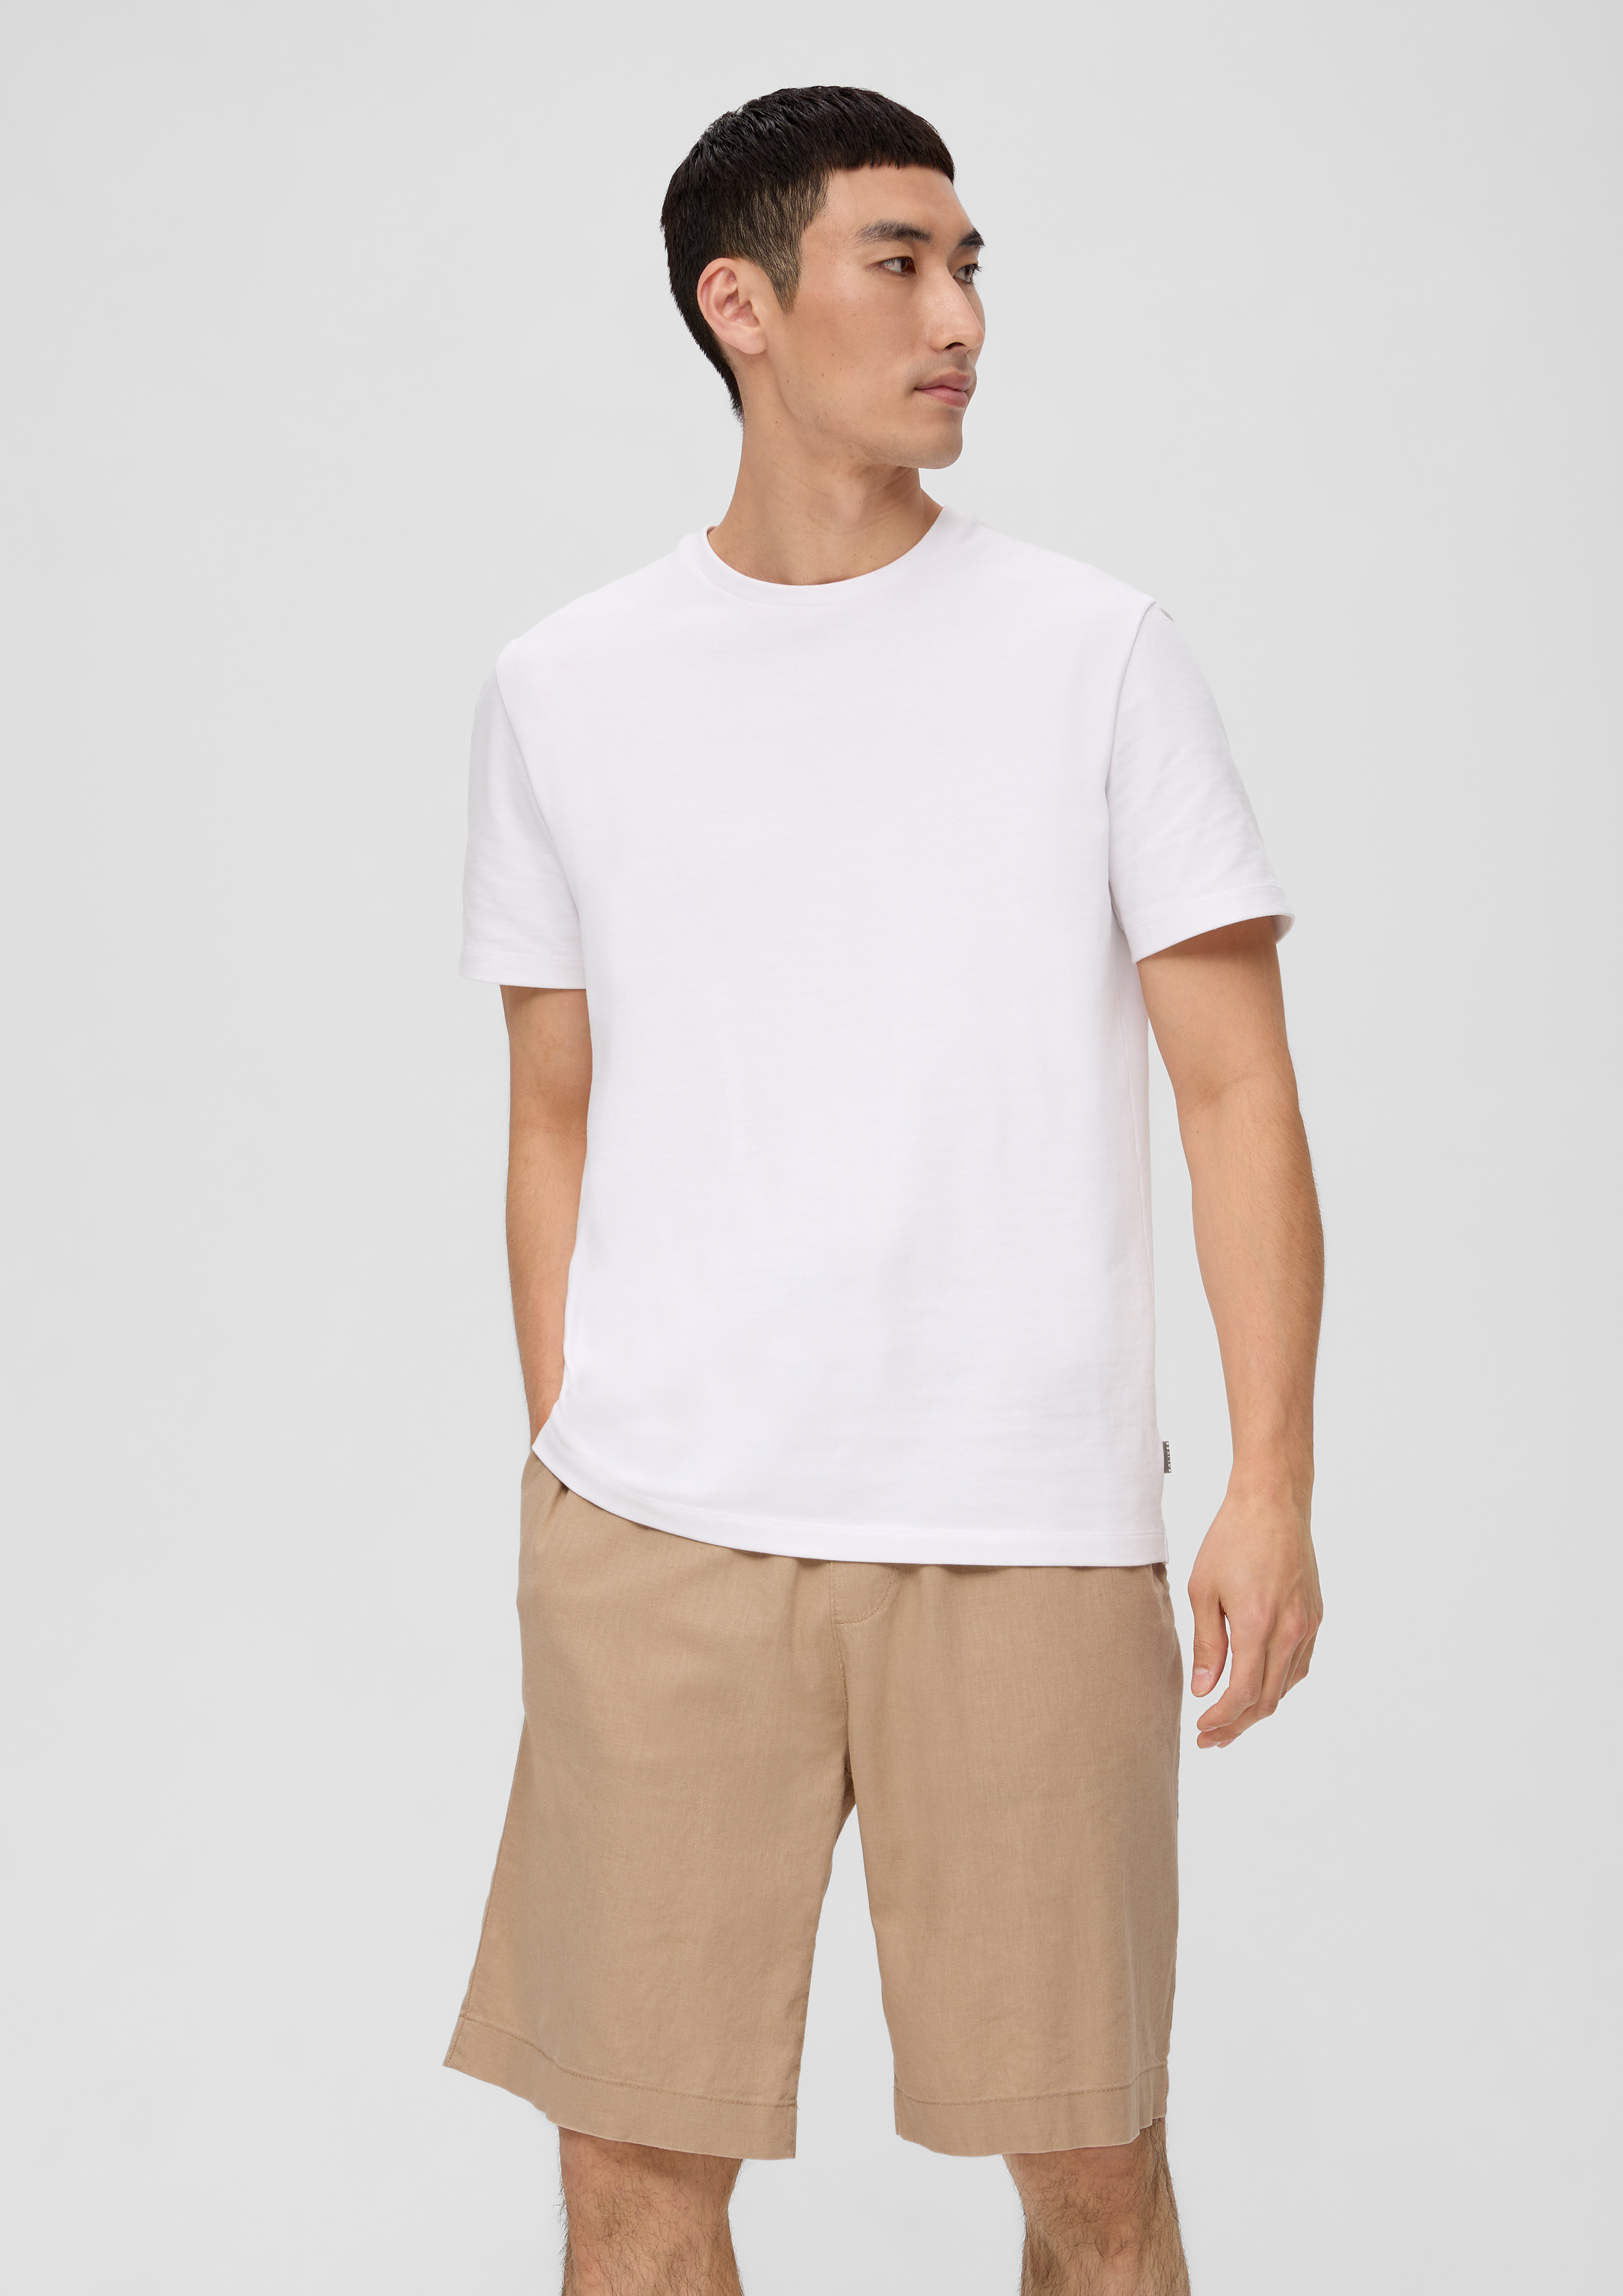 in white linen shorts Bermuda - blended